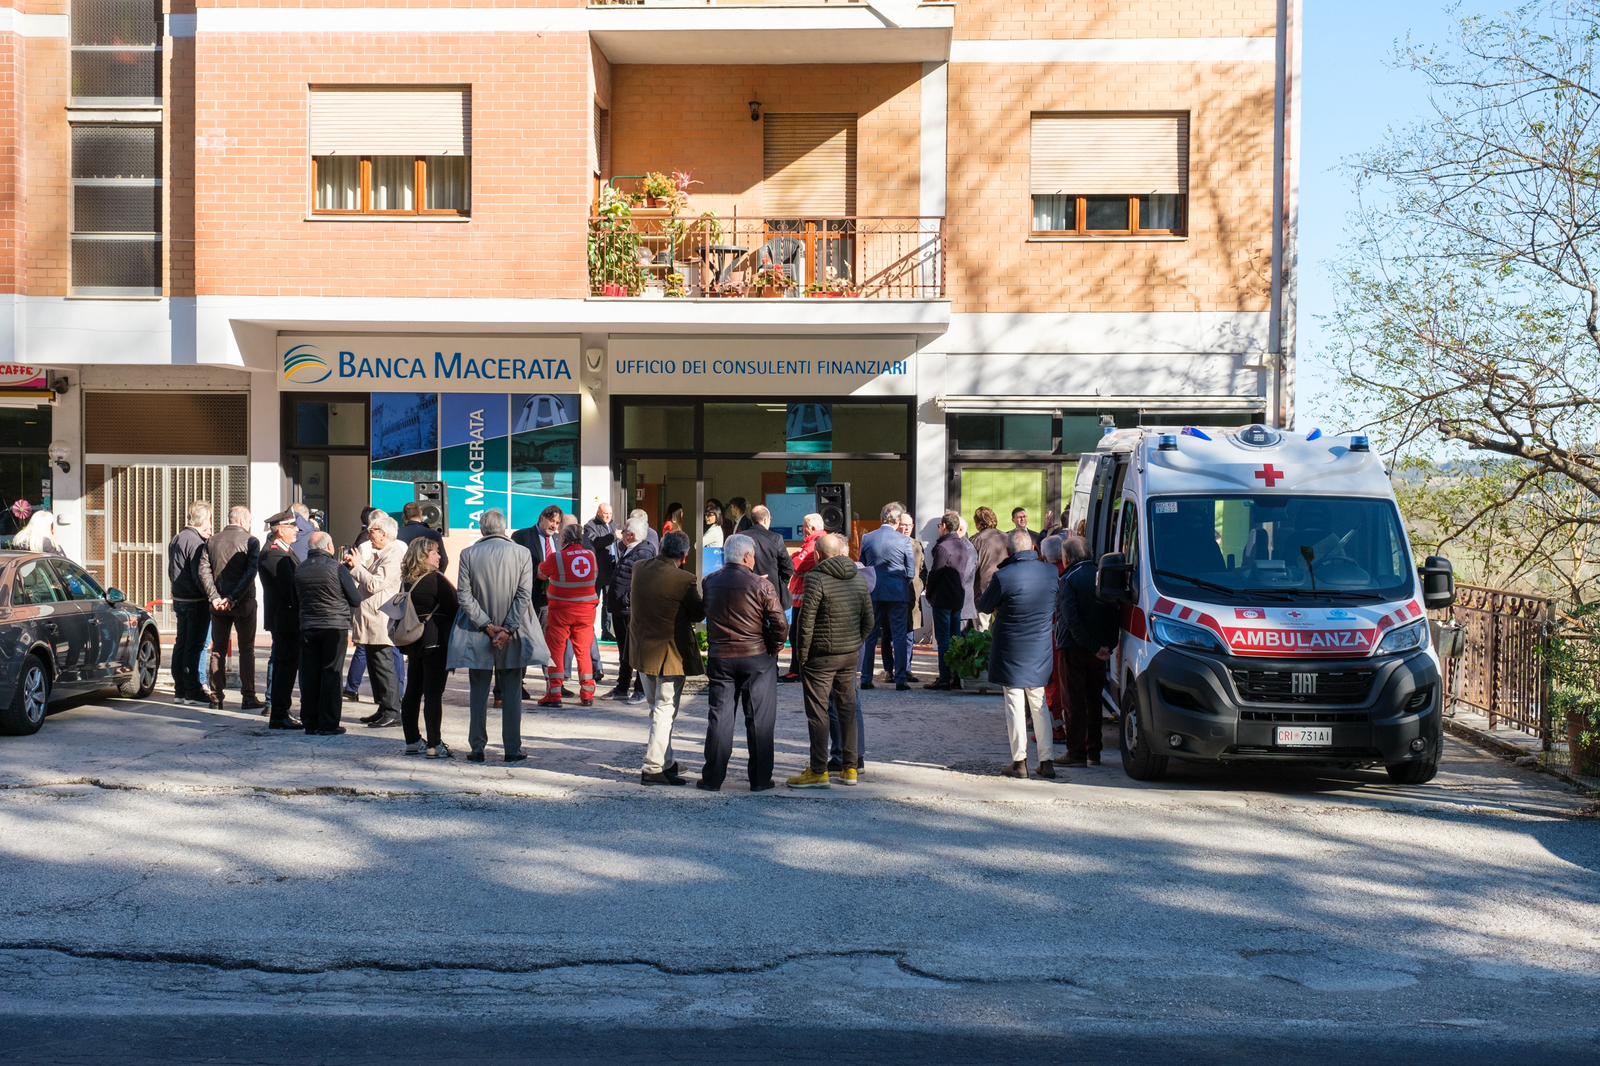 Banca Macerata arriva anche a Sarnano | Banca Macerata 3